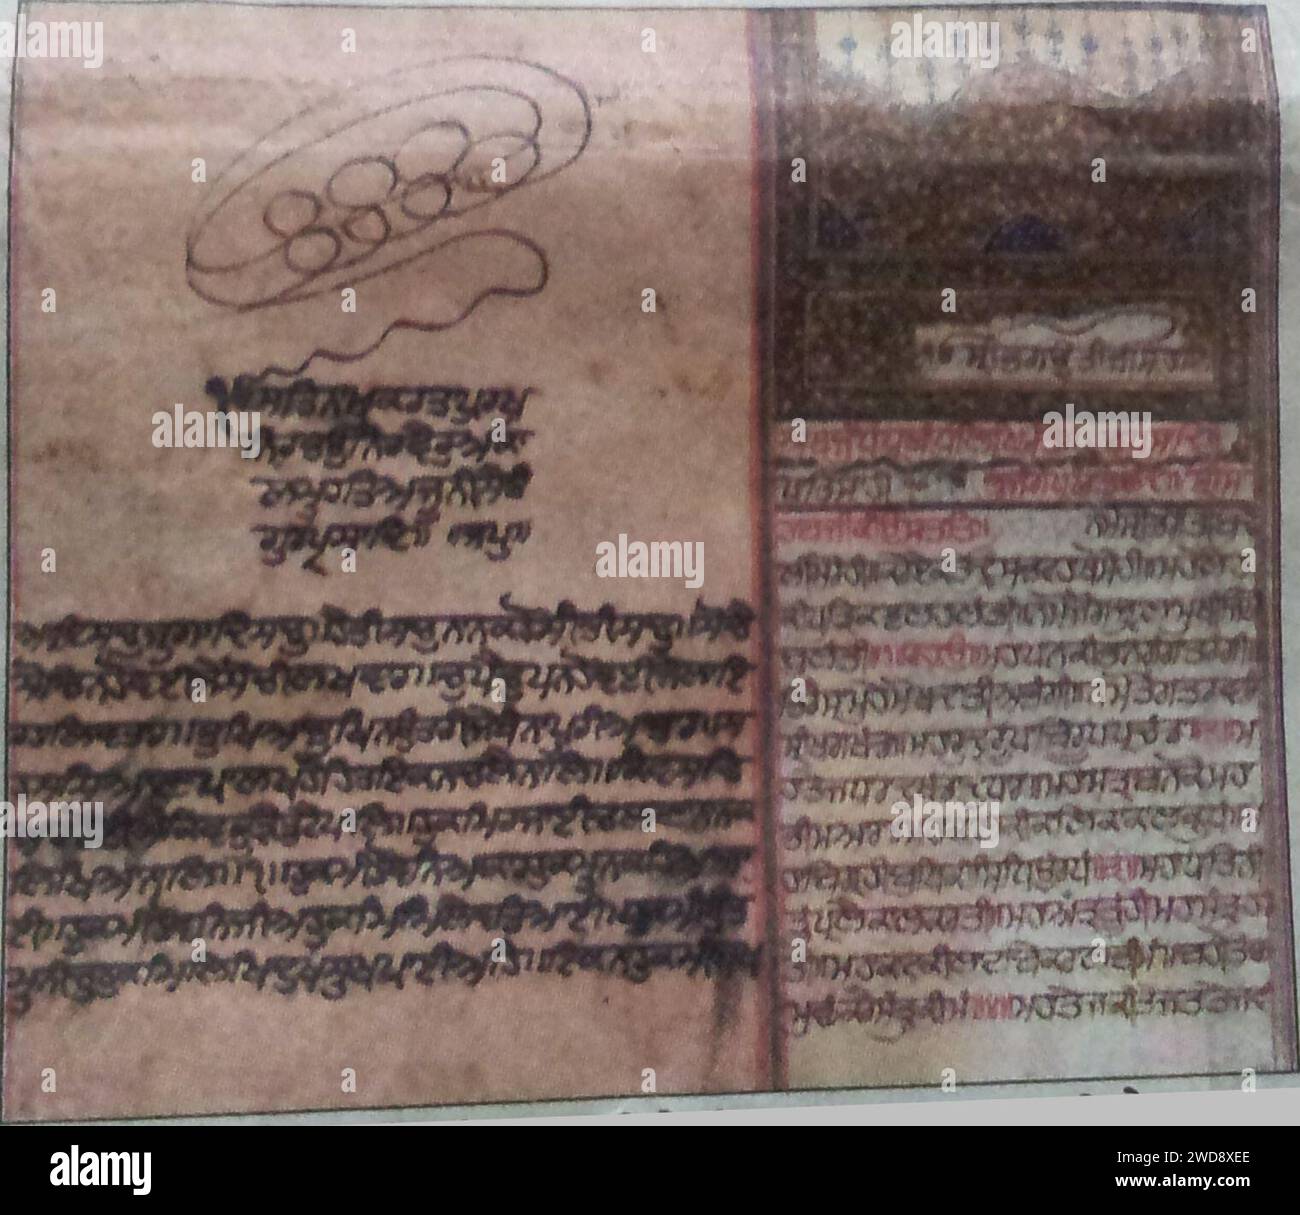 Manoscritti Guru Granth Sahib e Dasam Granth risalenti a 300 anni fa trovati nei villaggi di Maharashtra e Hyderabad. Foto Stock